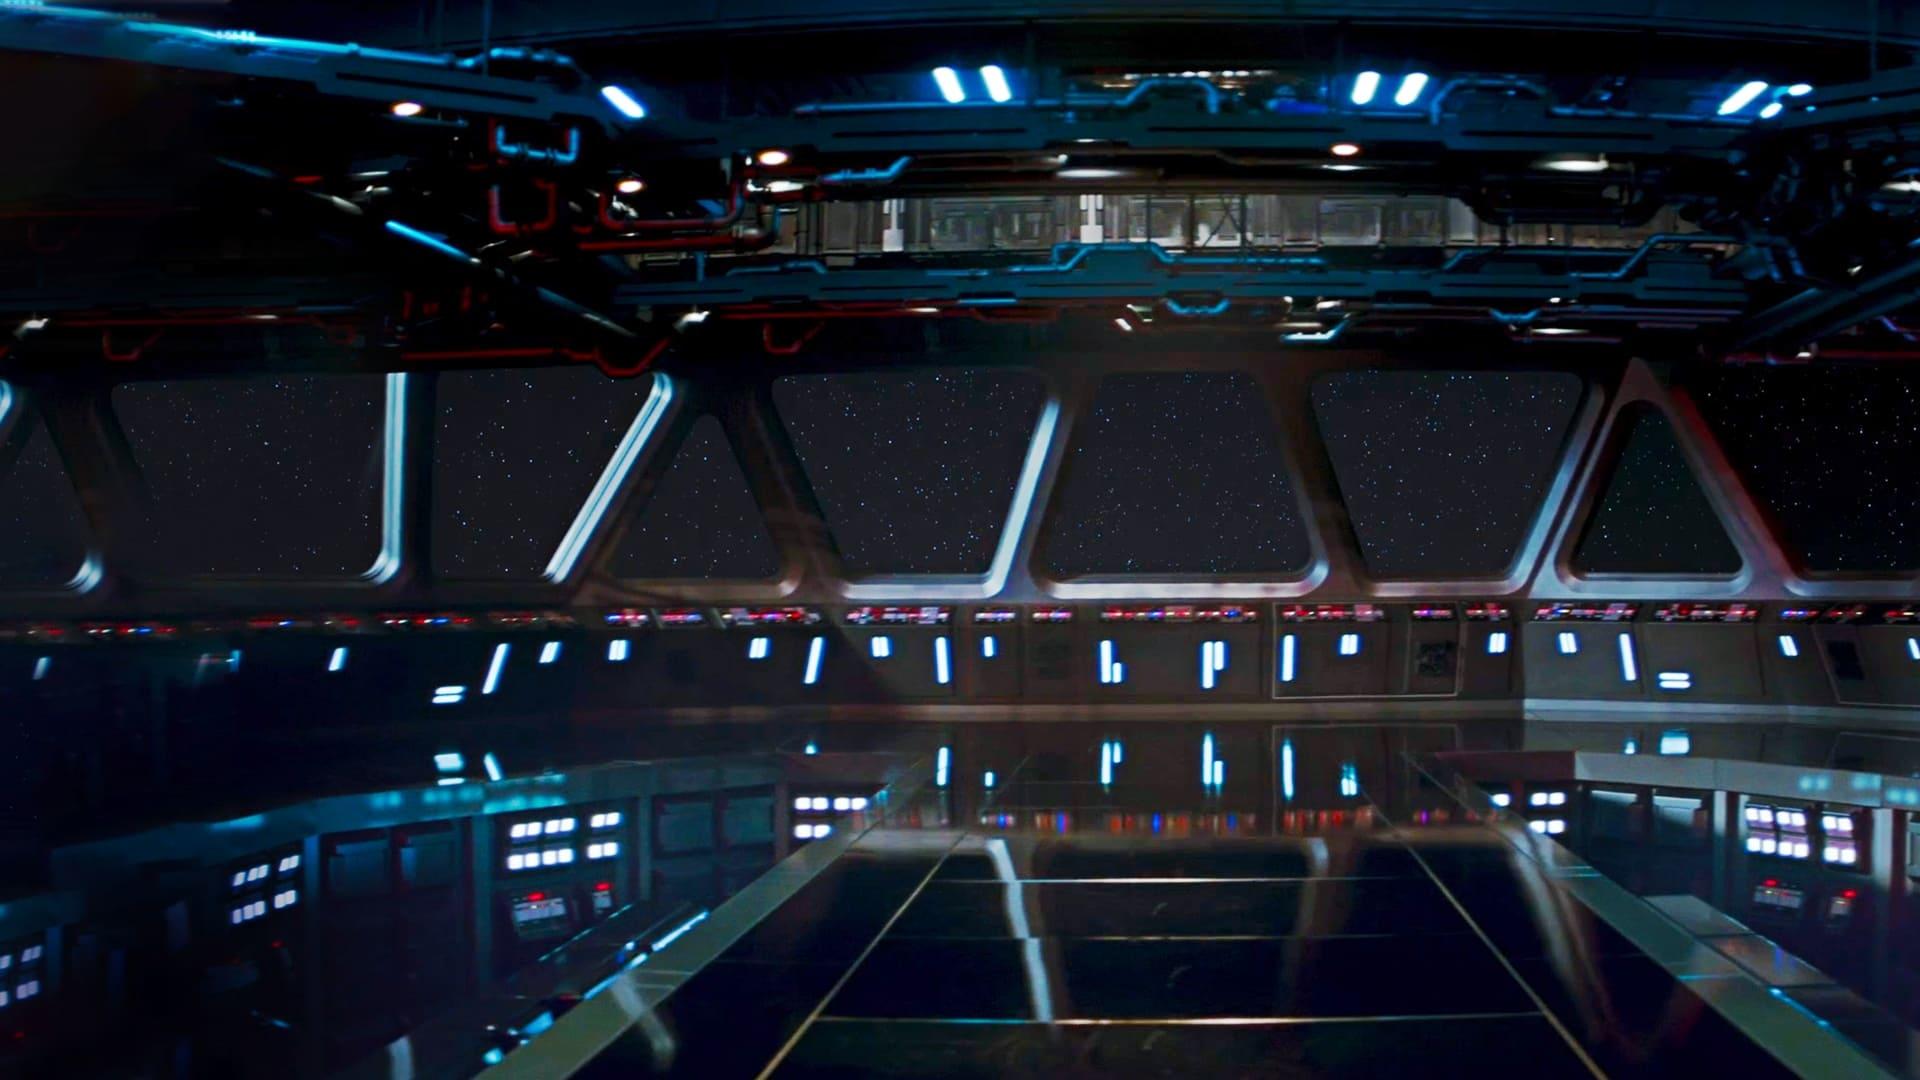 Star Wars Vehicle Flythroughs backdrop